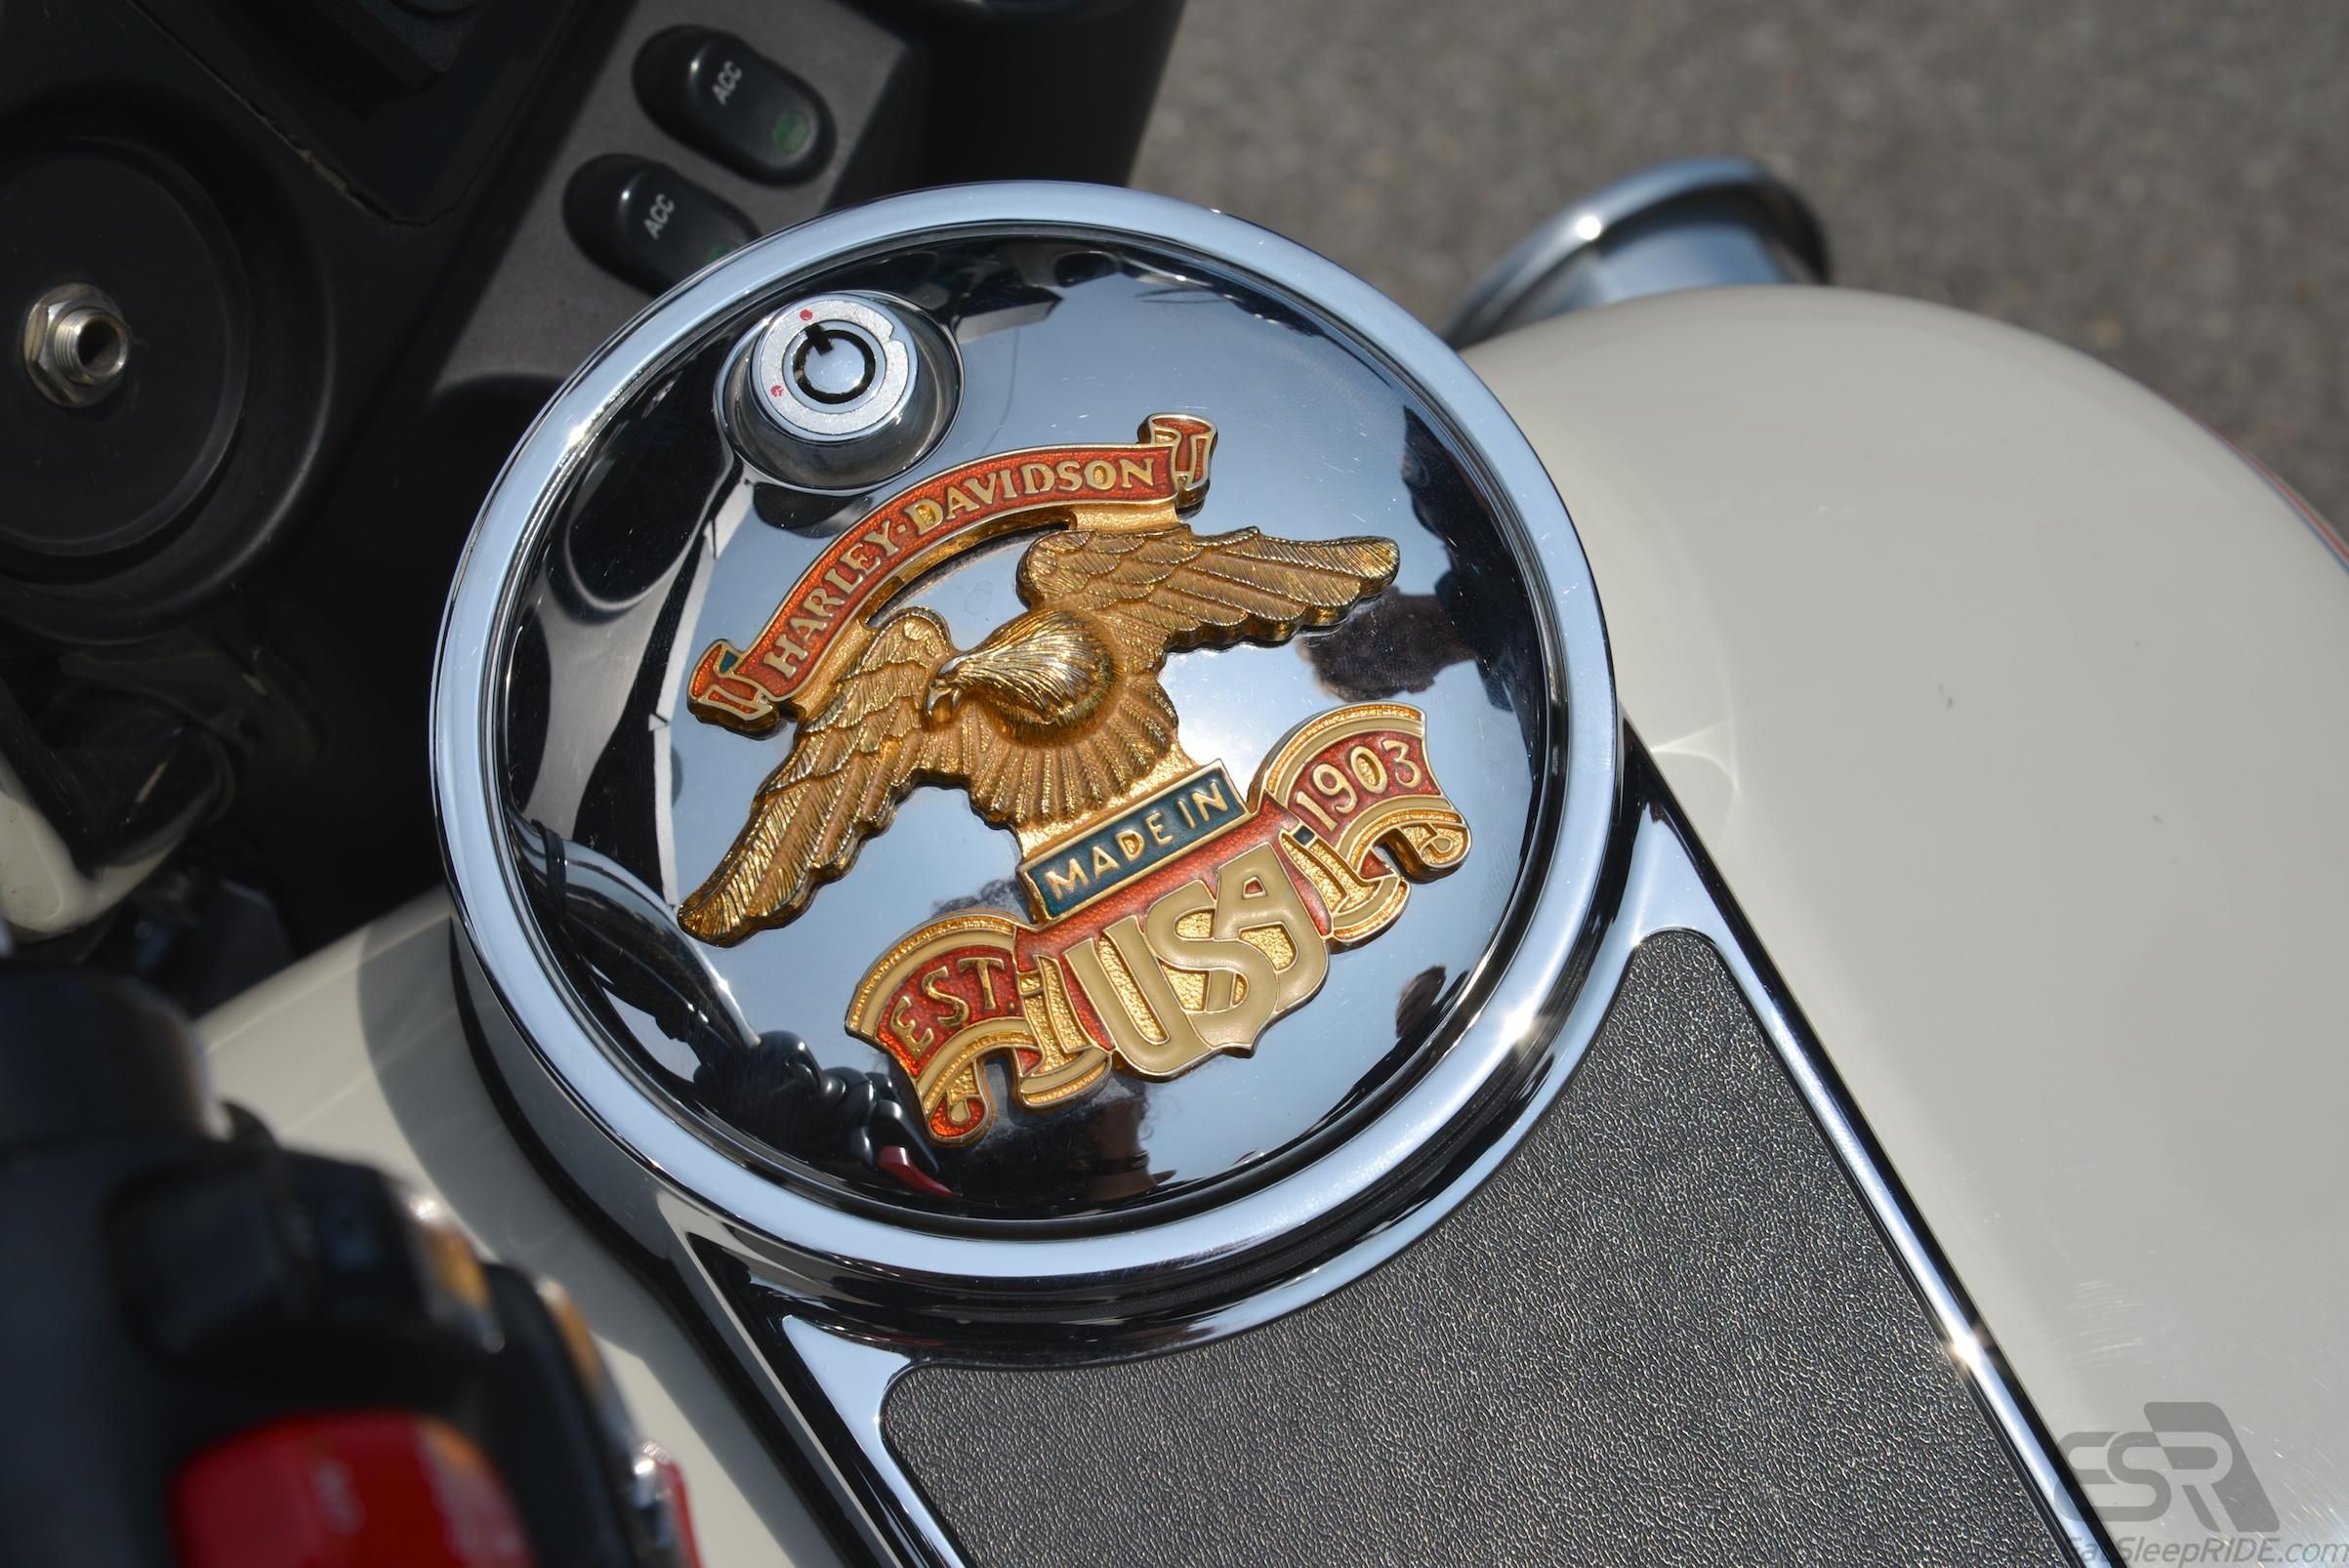 Harley Davidson Made in USA